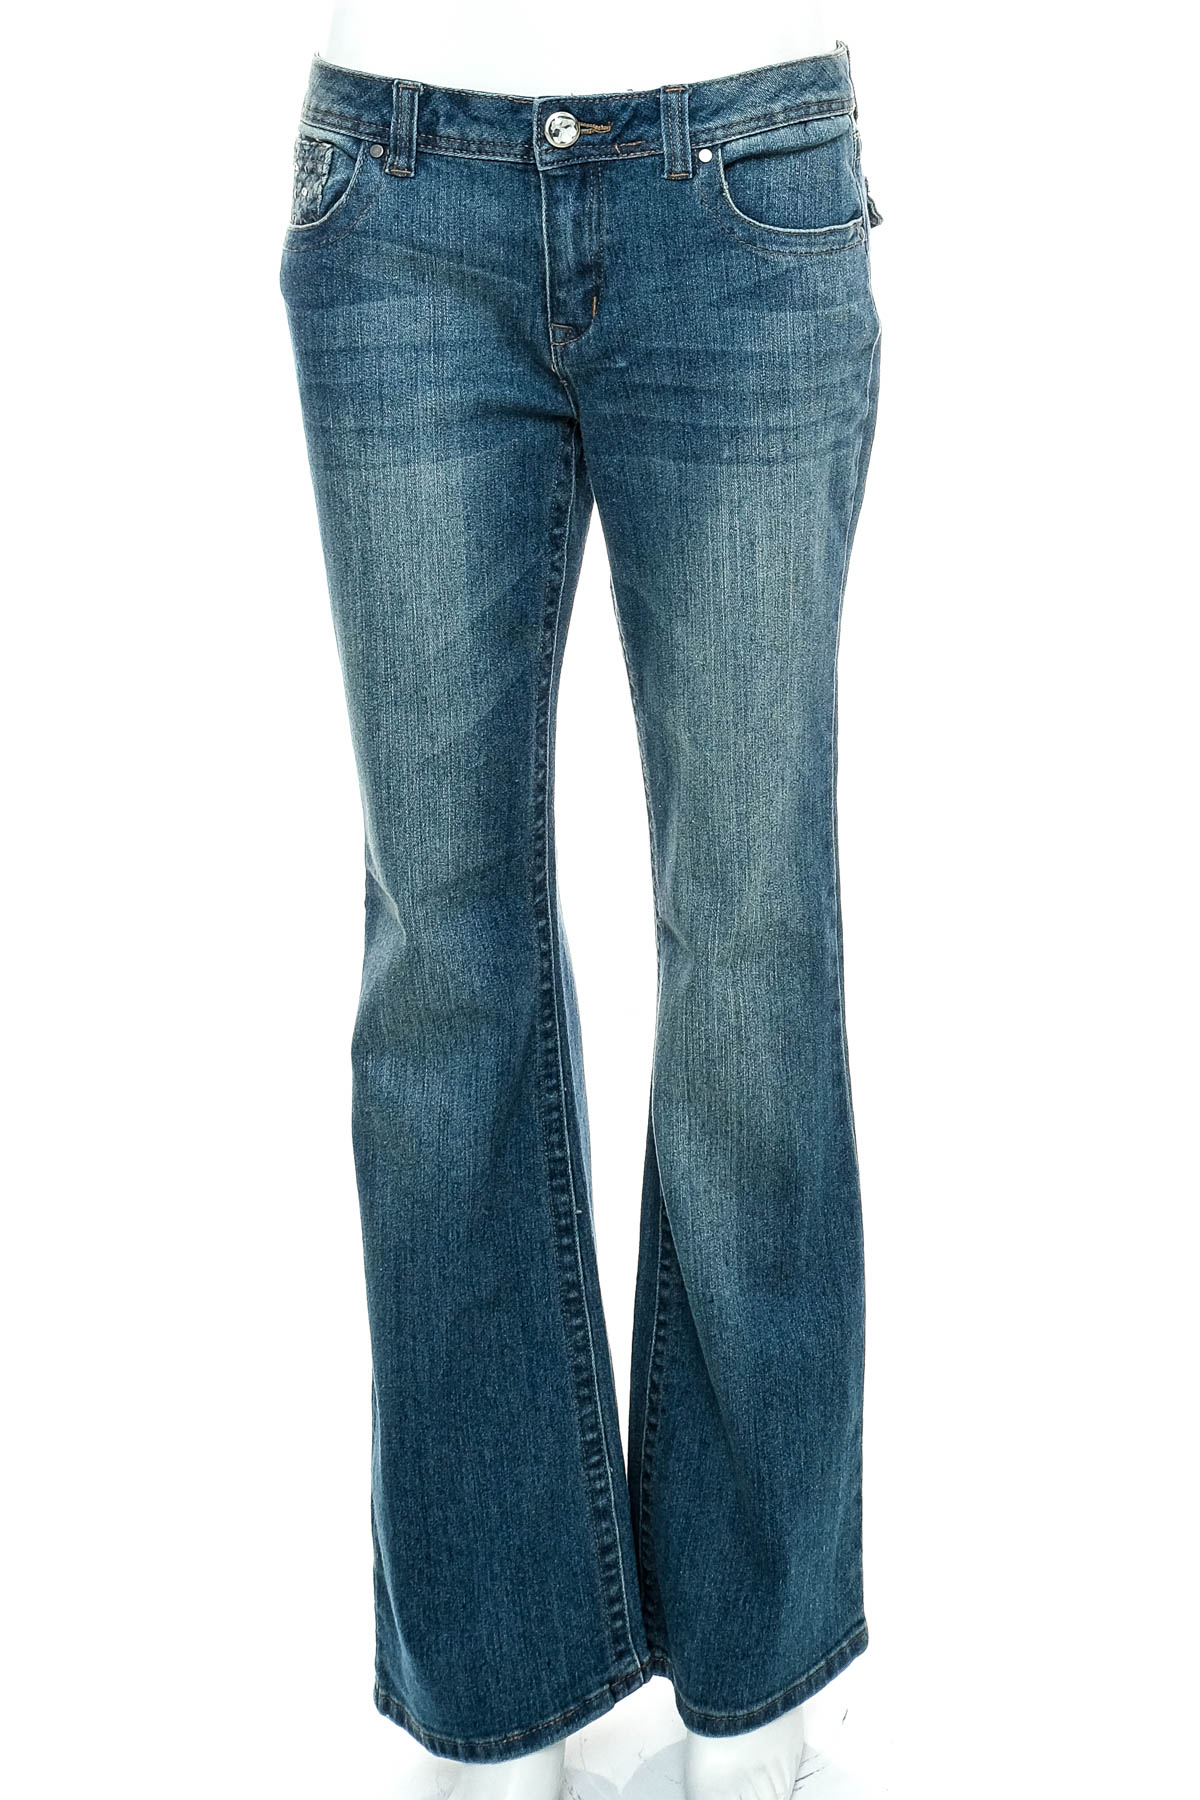 Women's jeans - APT. 9 - 0